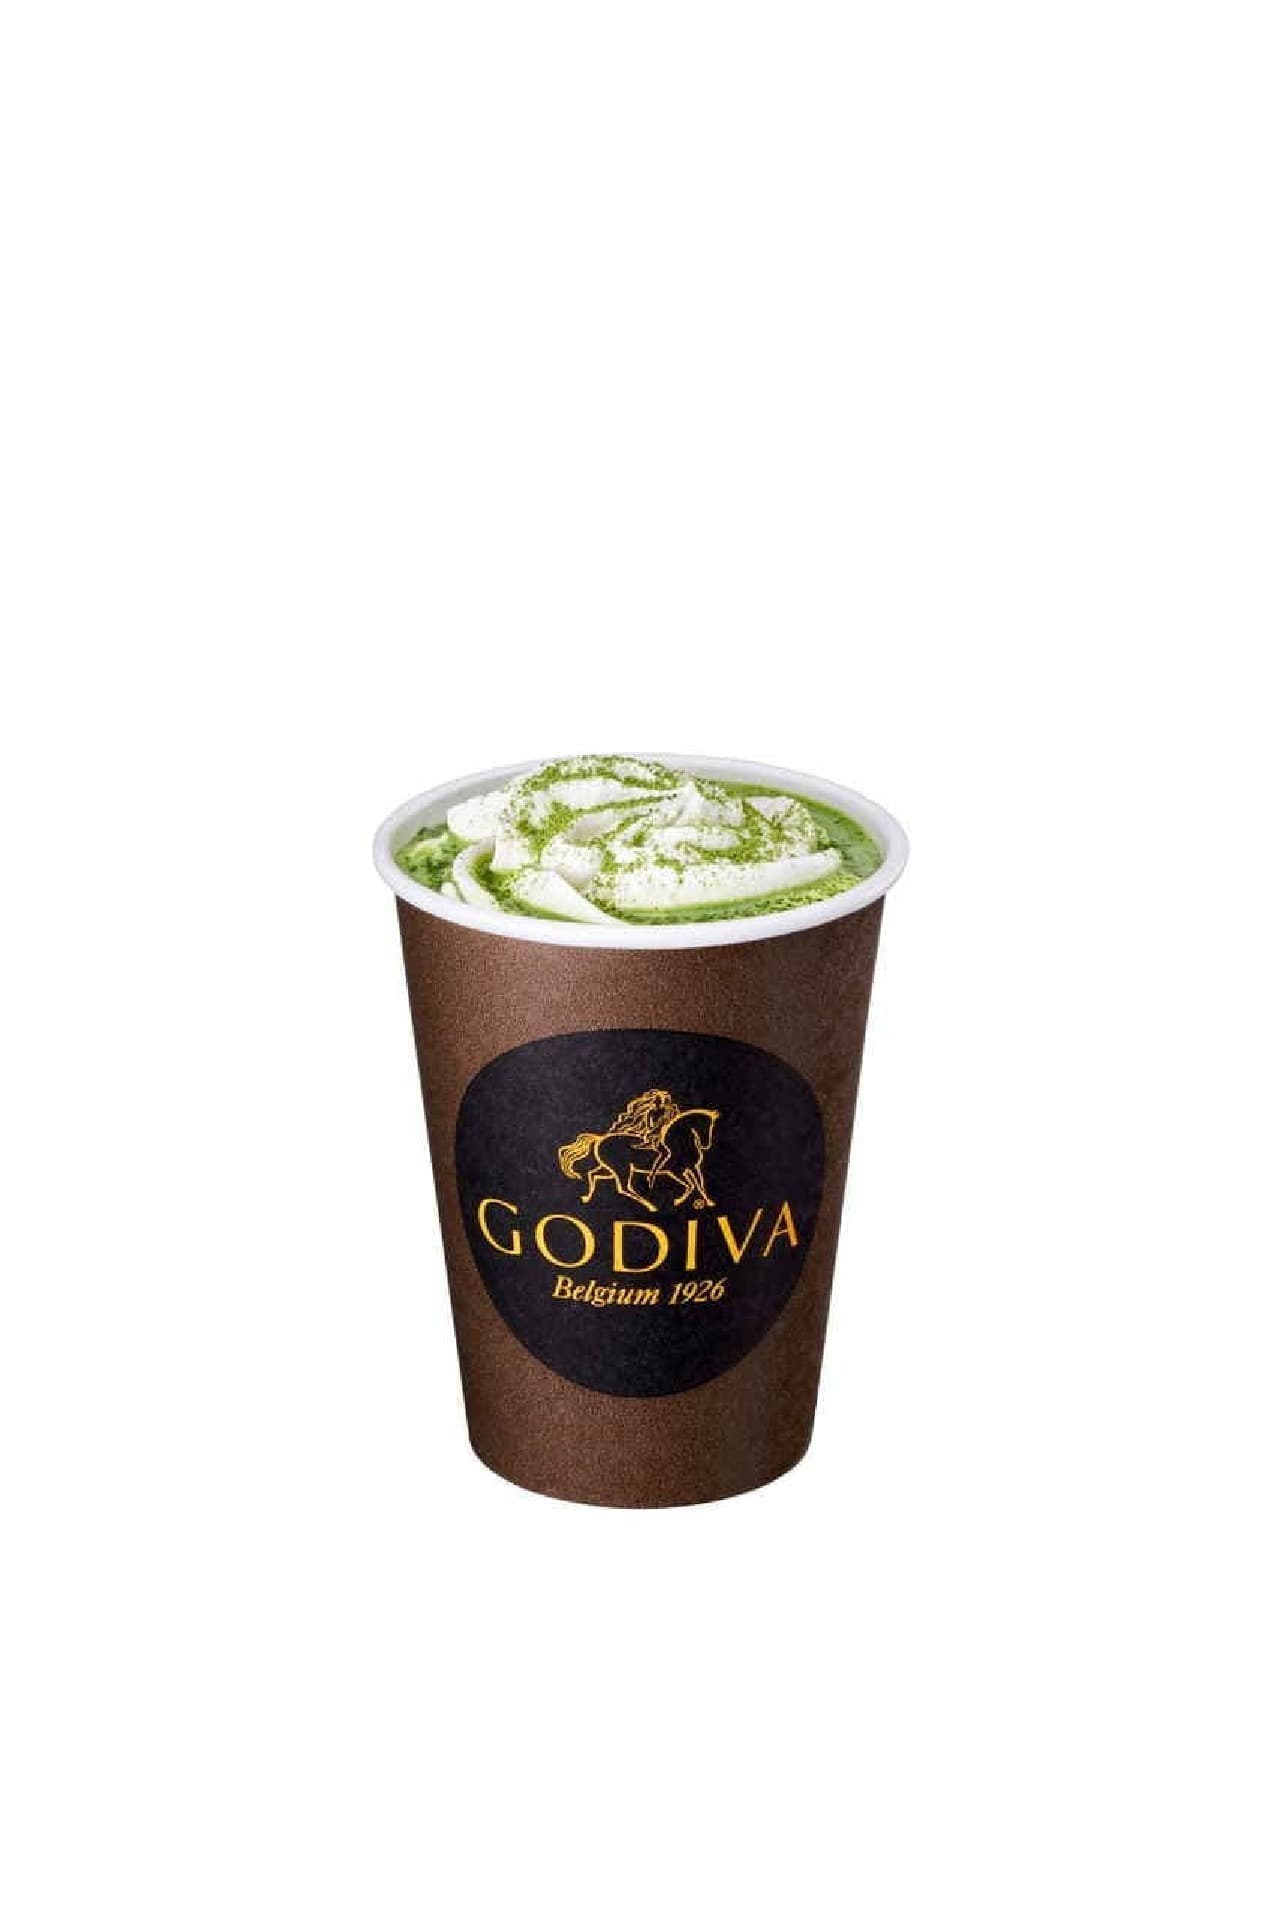 Godiva "Hot Chocolate Liquidizer - Nishio's Matcha Green Tea".